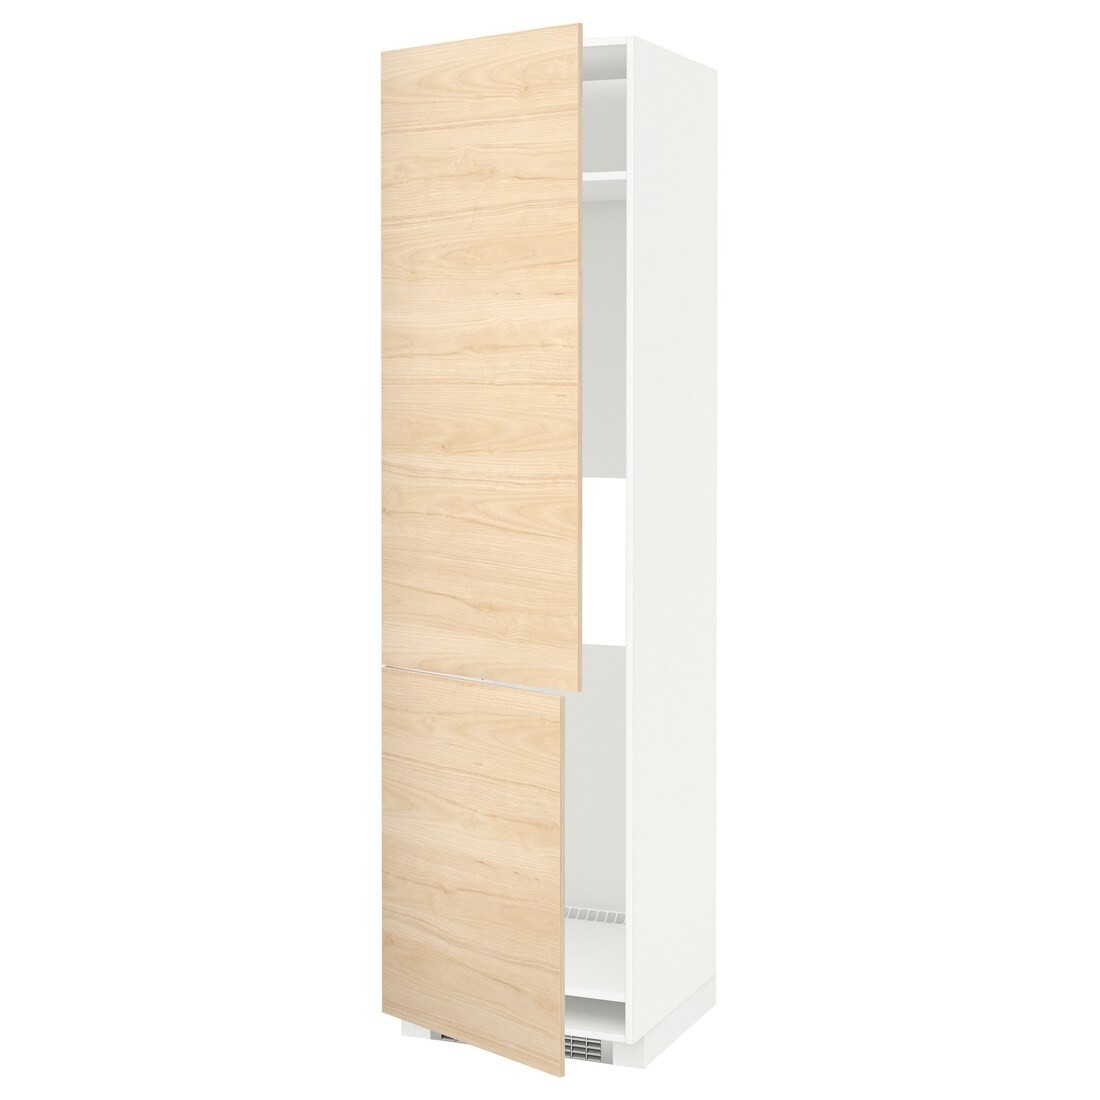 IKEA METOD МЕТОД Высокий шкаф для холодильника / морозильника / 2дверцы, белый / Askersund узор светлый ясень, 60x60x220 см 89215808 892.158.08